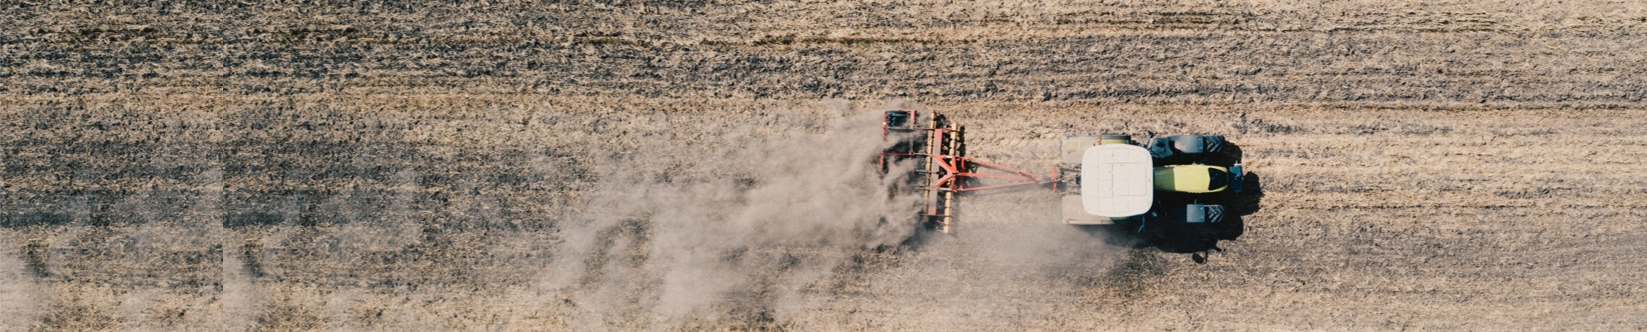 A legutóbbi fejlesztések a talajművelés-technológiában